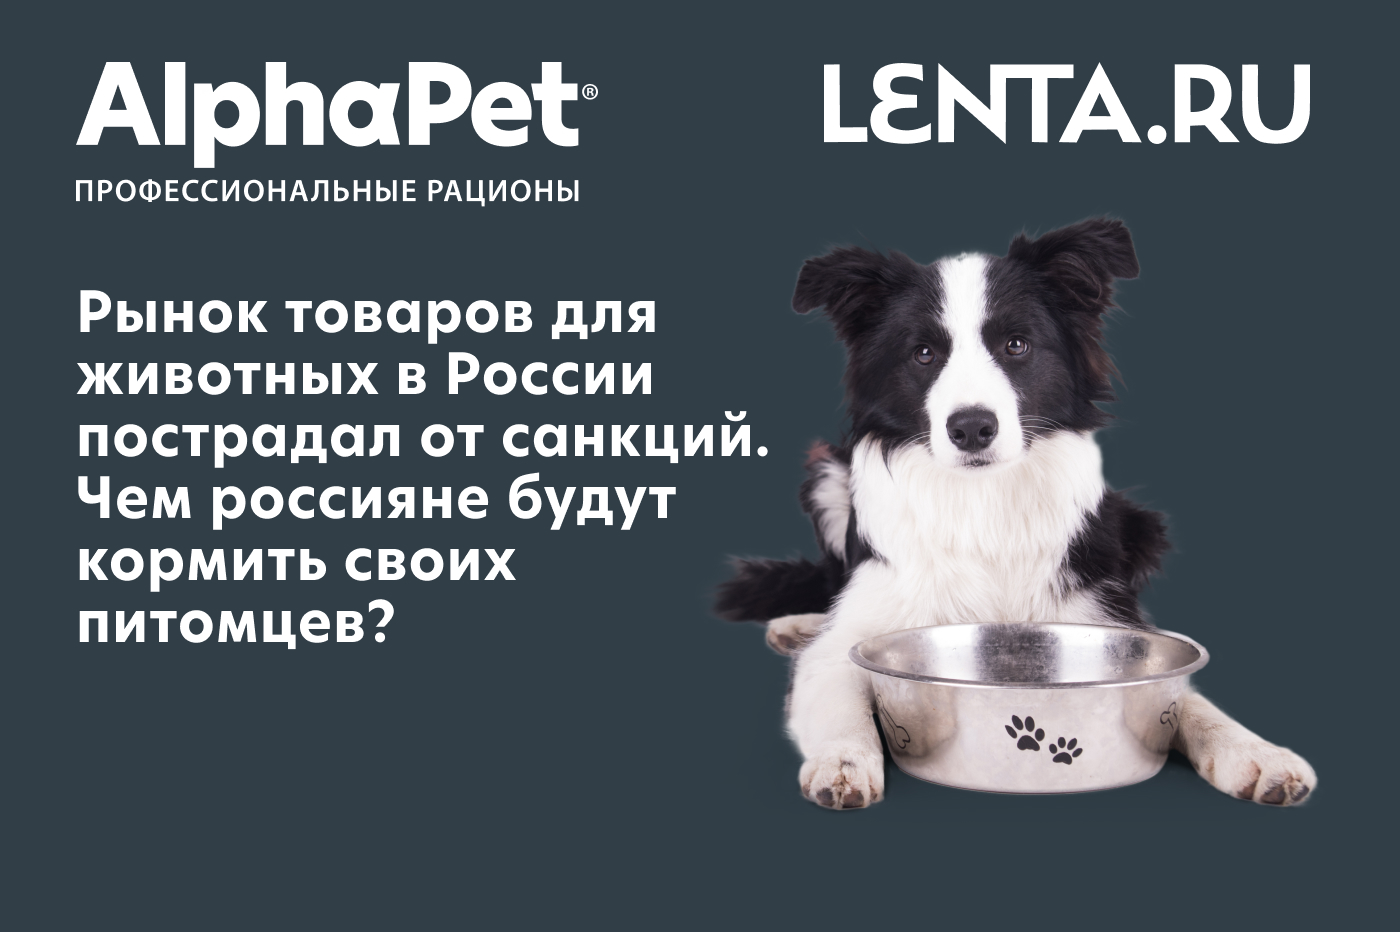 Рынок товаров для животных в России пострадал от санкций. Чем россияне будут кормить своих питомцев?